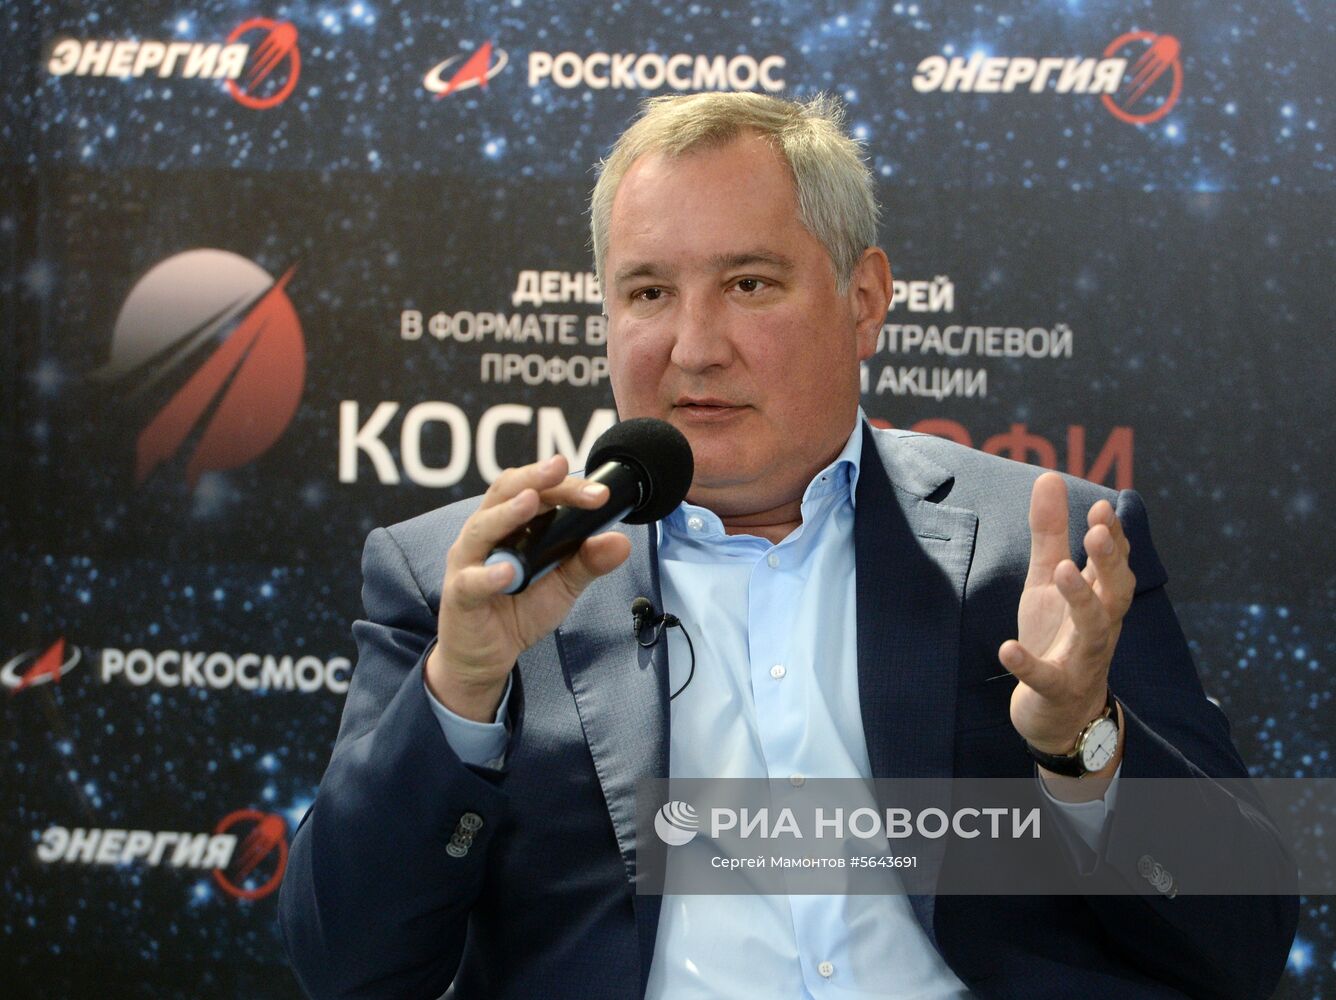 Встреча гендиректора "Роскосмос" Д. Рогозина с будущими специалистами ракетно-космической отрасли